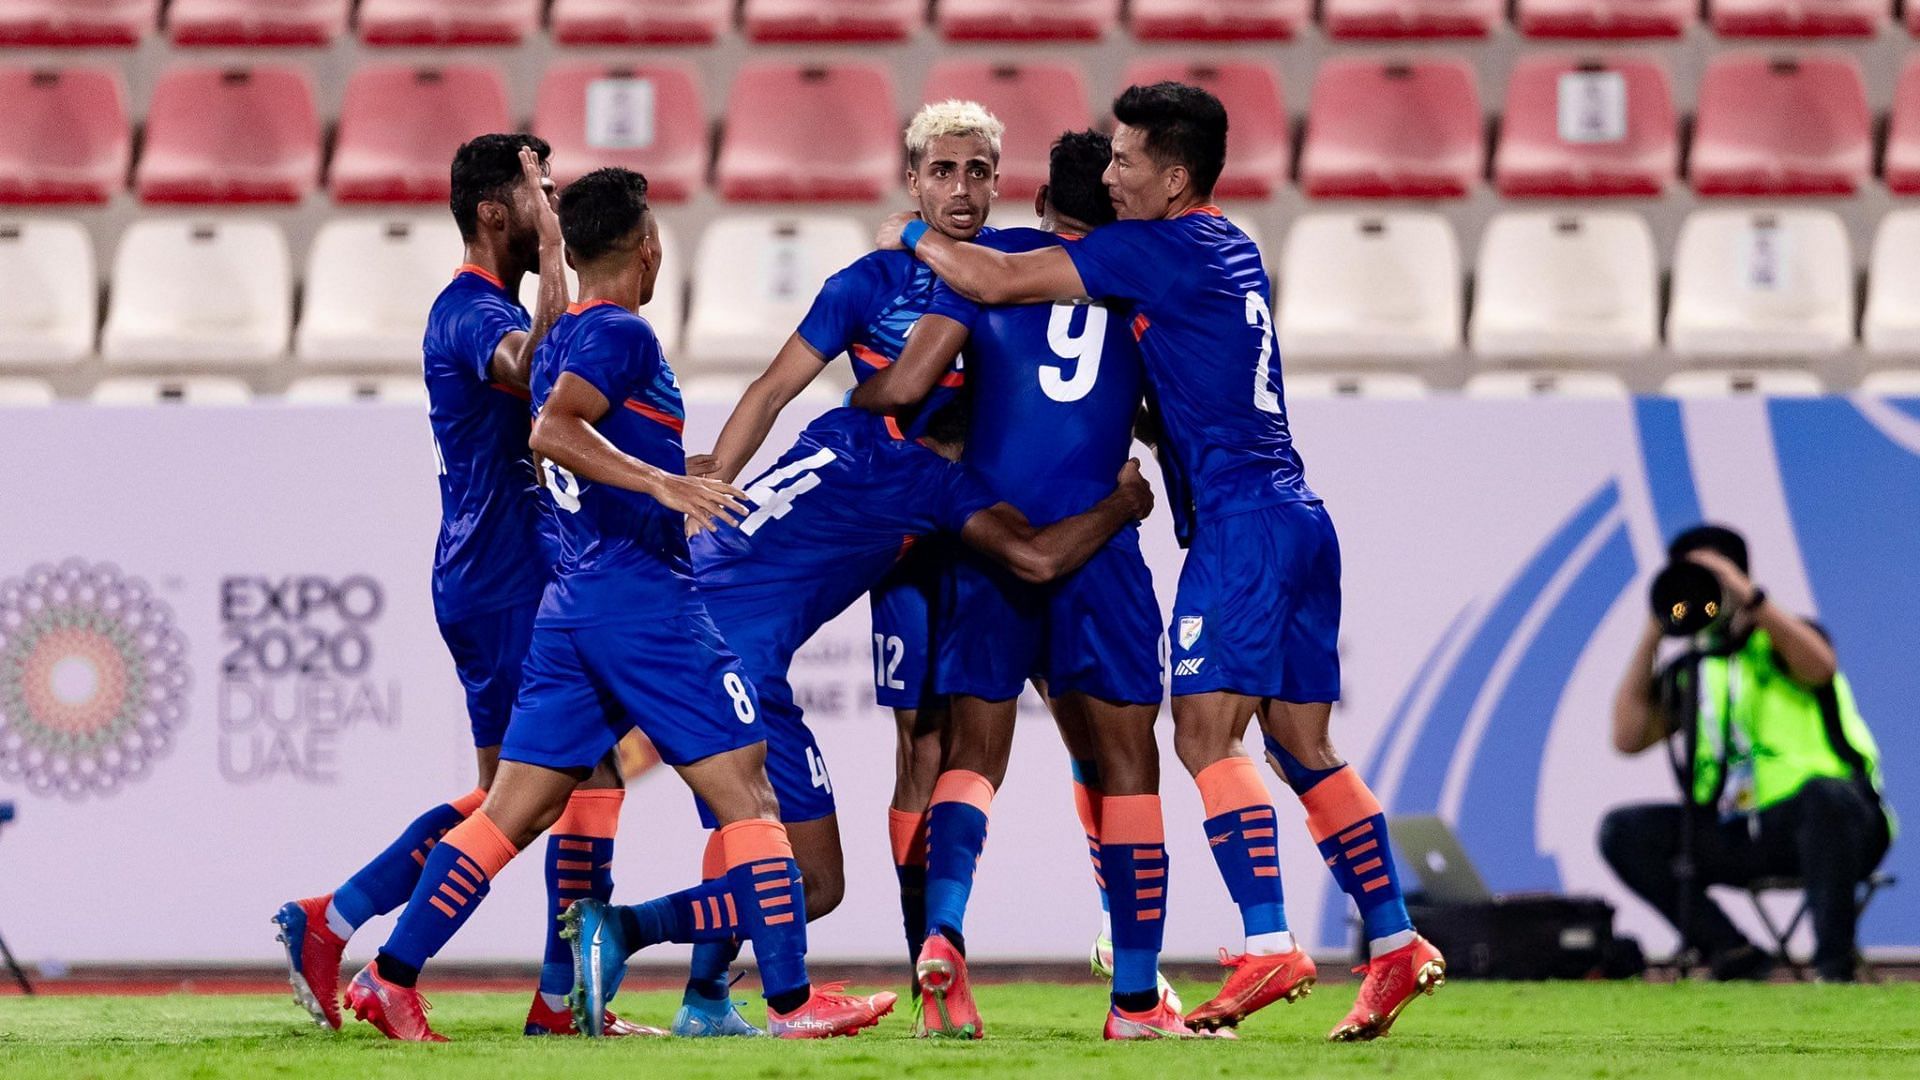 India U23 celebrate after scoring against Oman U23 in the AFC Asian Cup U23 qualifiers